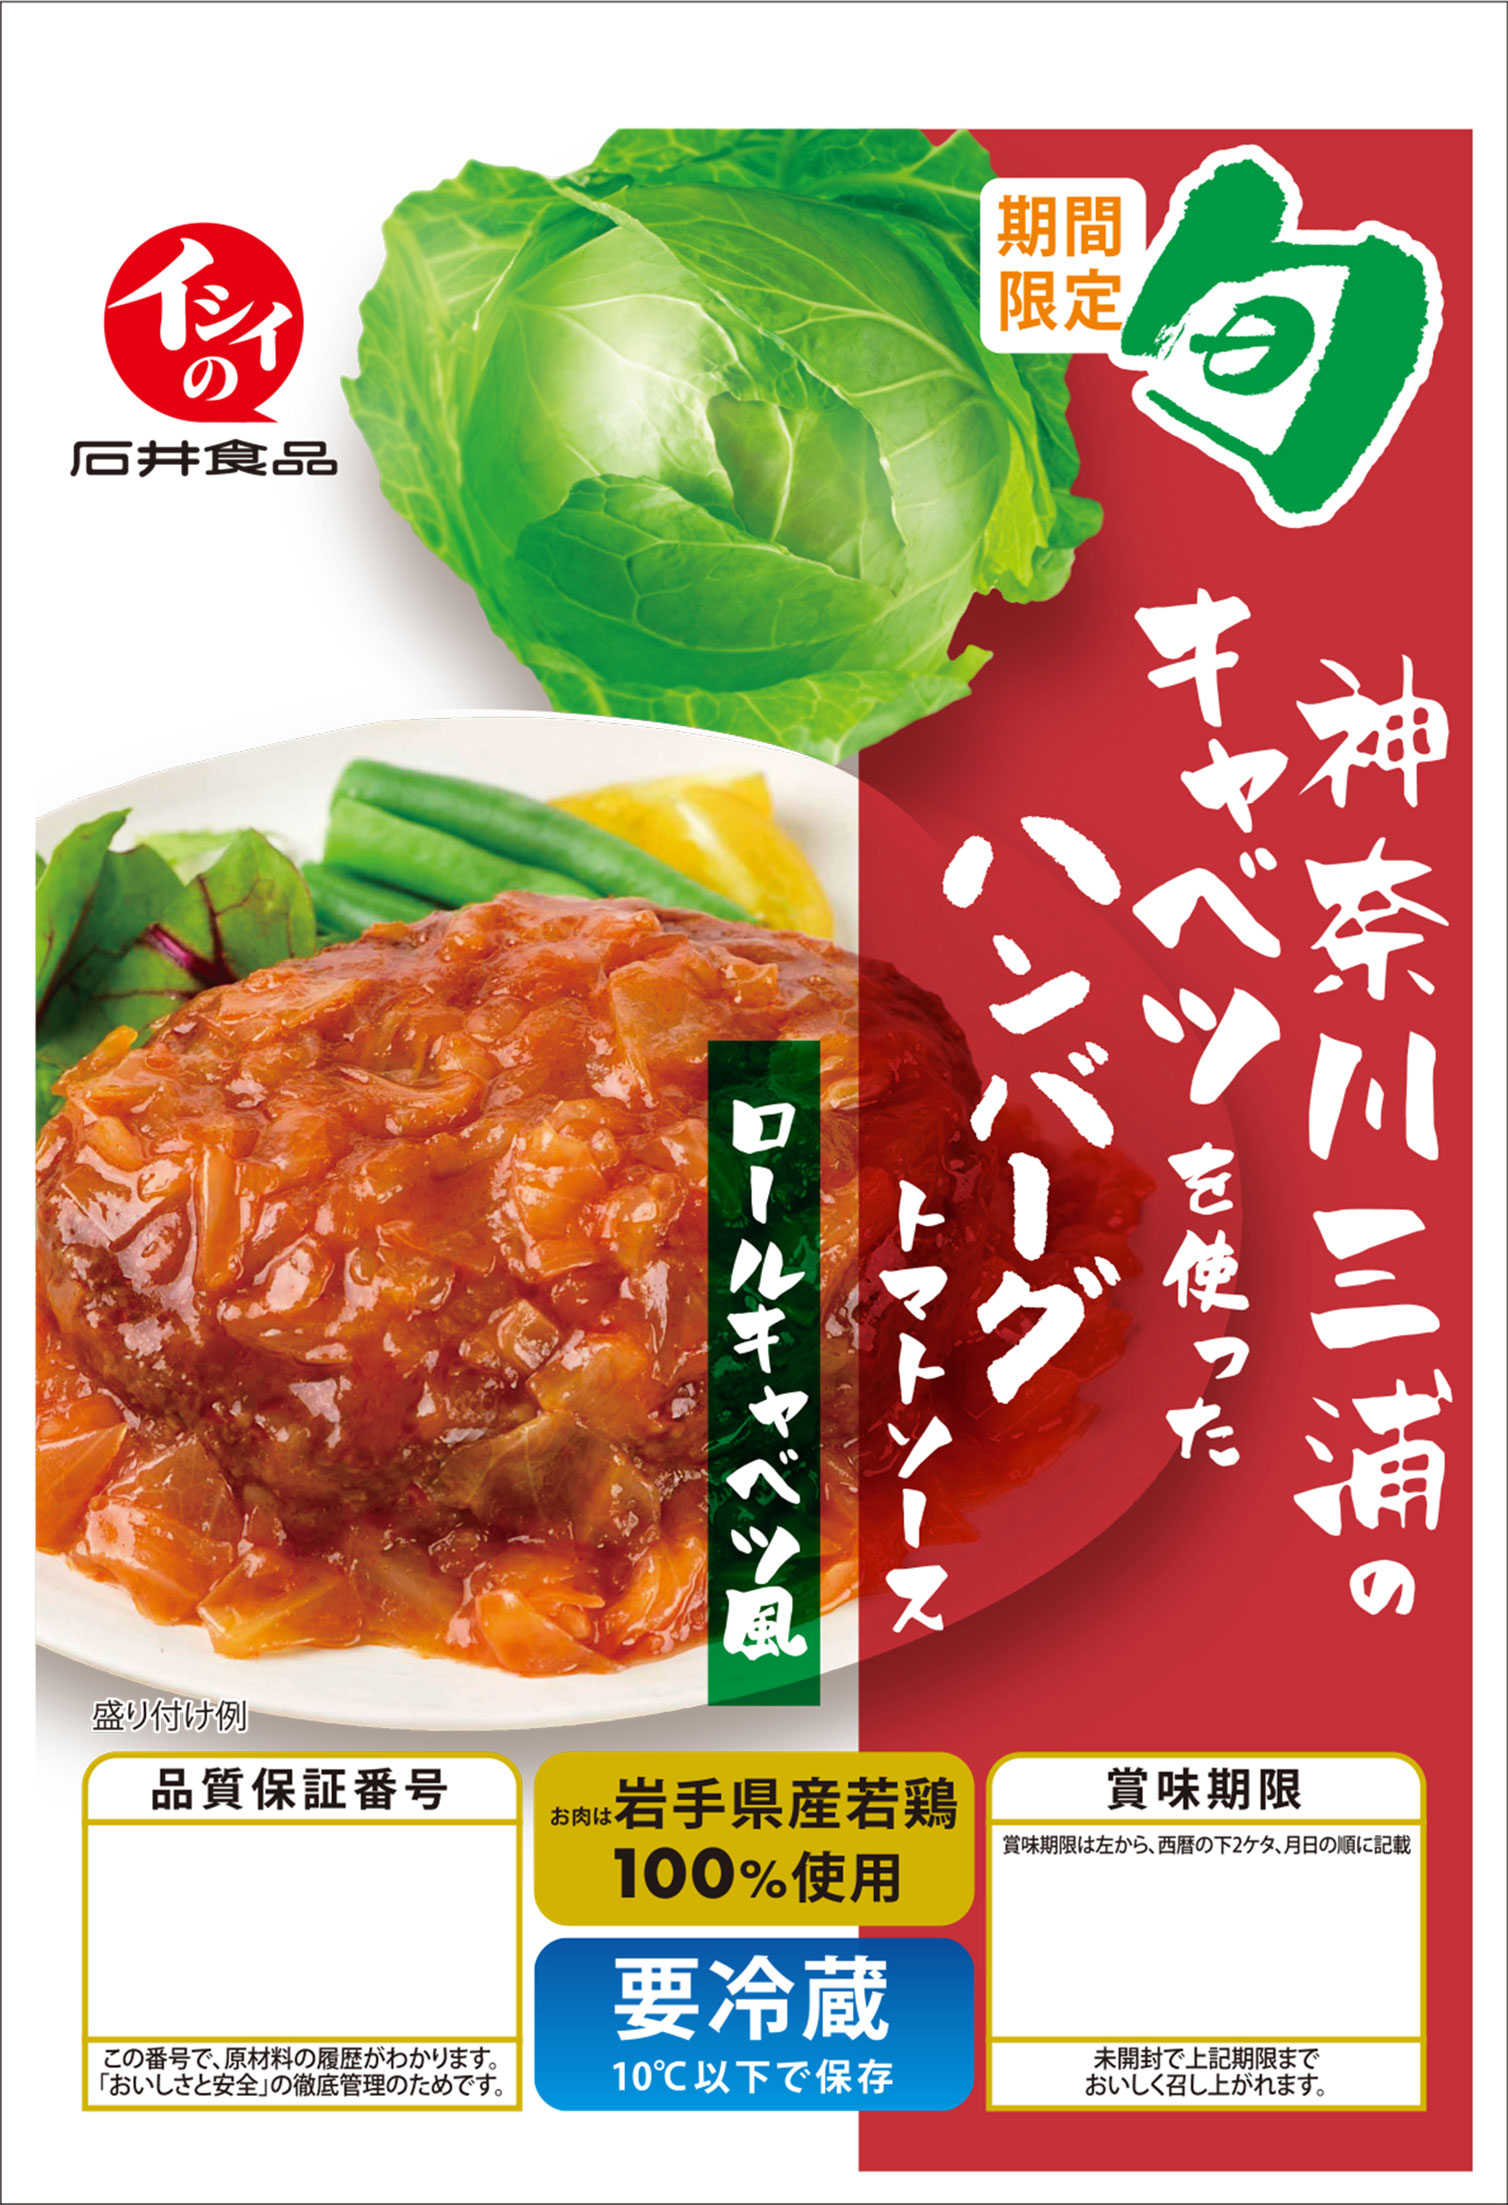 神奈川県三浦のキャベツを使ったトマトソースハンバーグ ロールキャベツ風